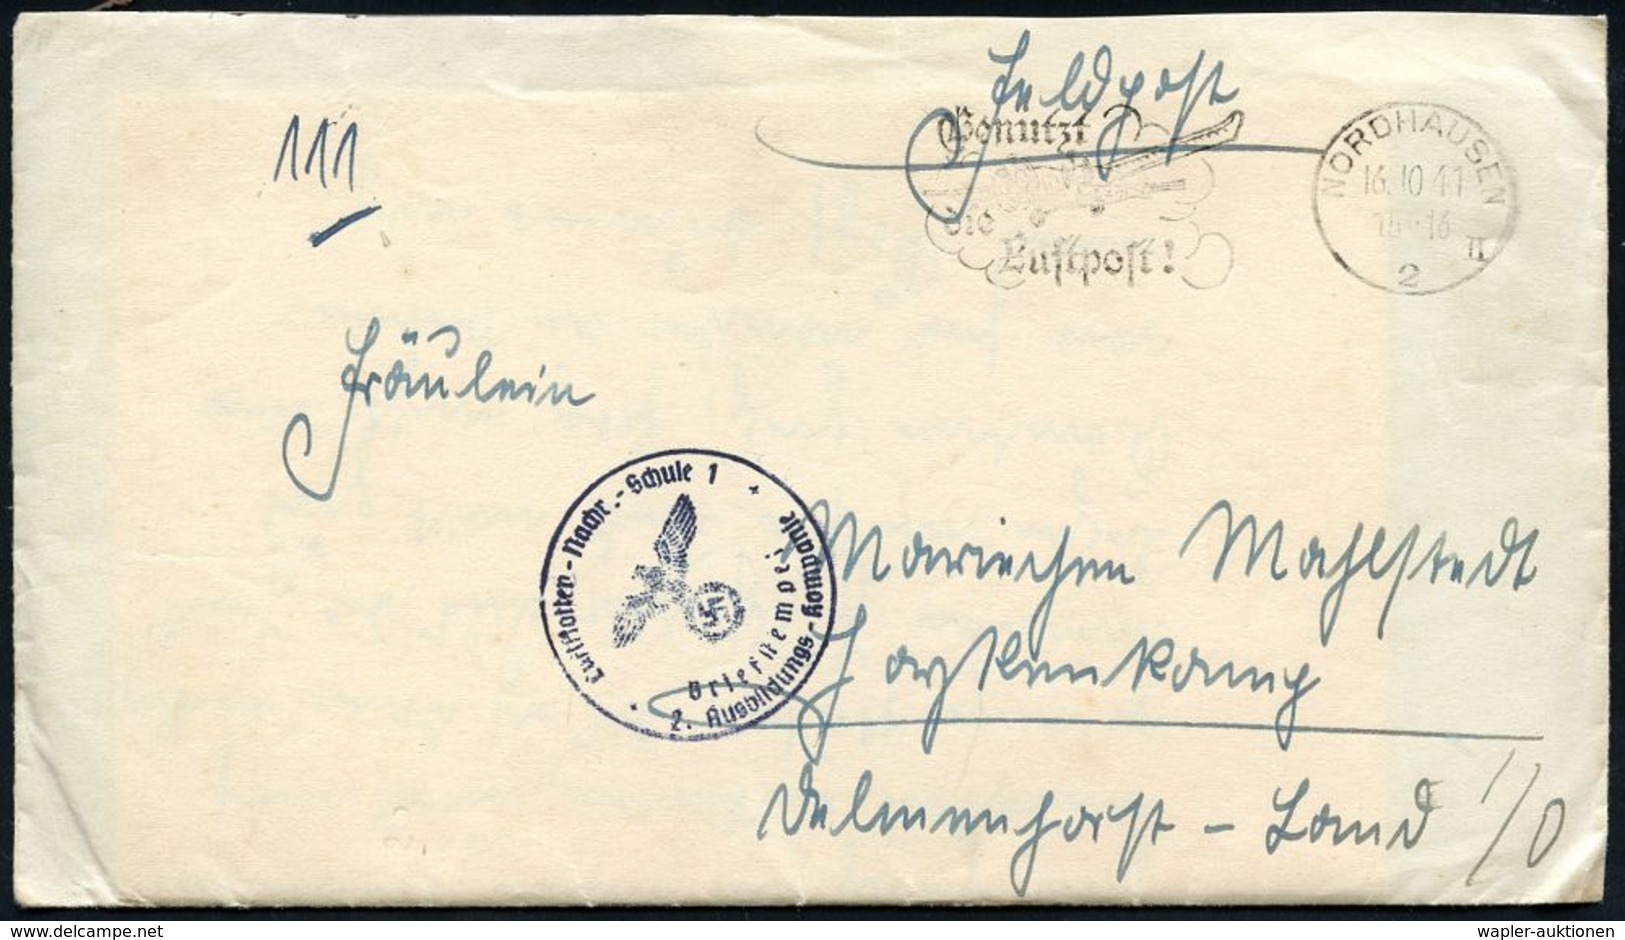 LUFTWAFFEN-FLUGSCHULEN & AKADEMIEN : NORDHAUSEN/ 2/ II/ Benutzt/ Die/ Luftpost! 1941 (14.10.) MWSt + Blauer 1K-HdN: Luft - Airplanes